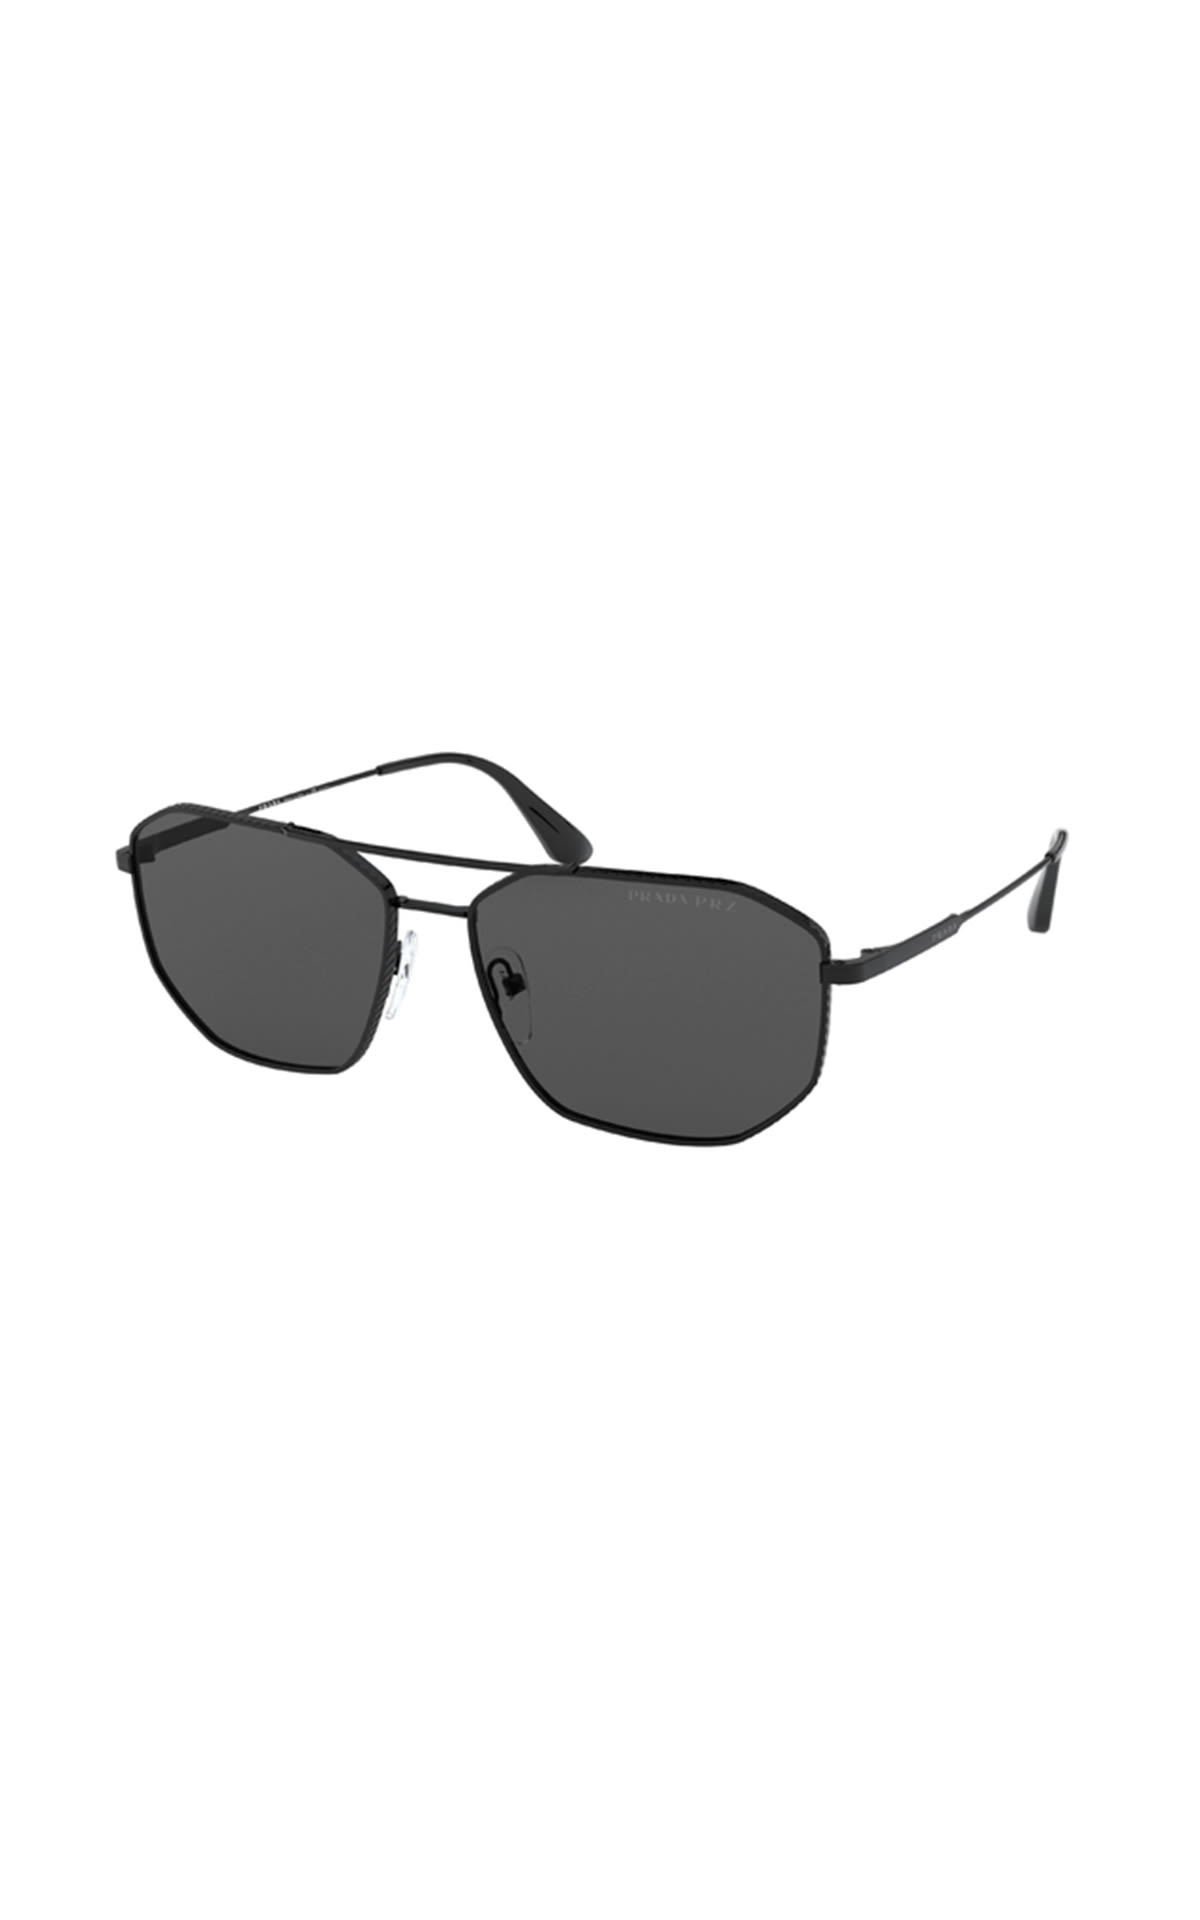 Sunglass Hut lunettes de soleil Prada homme La Vallée Village